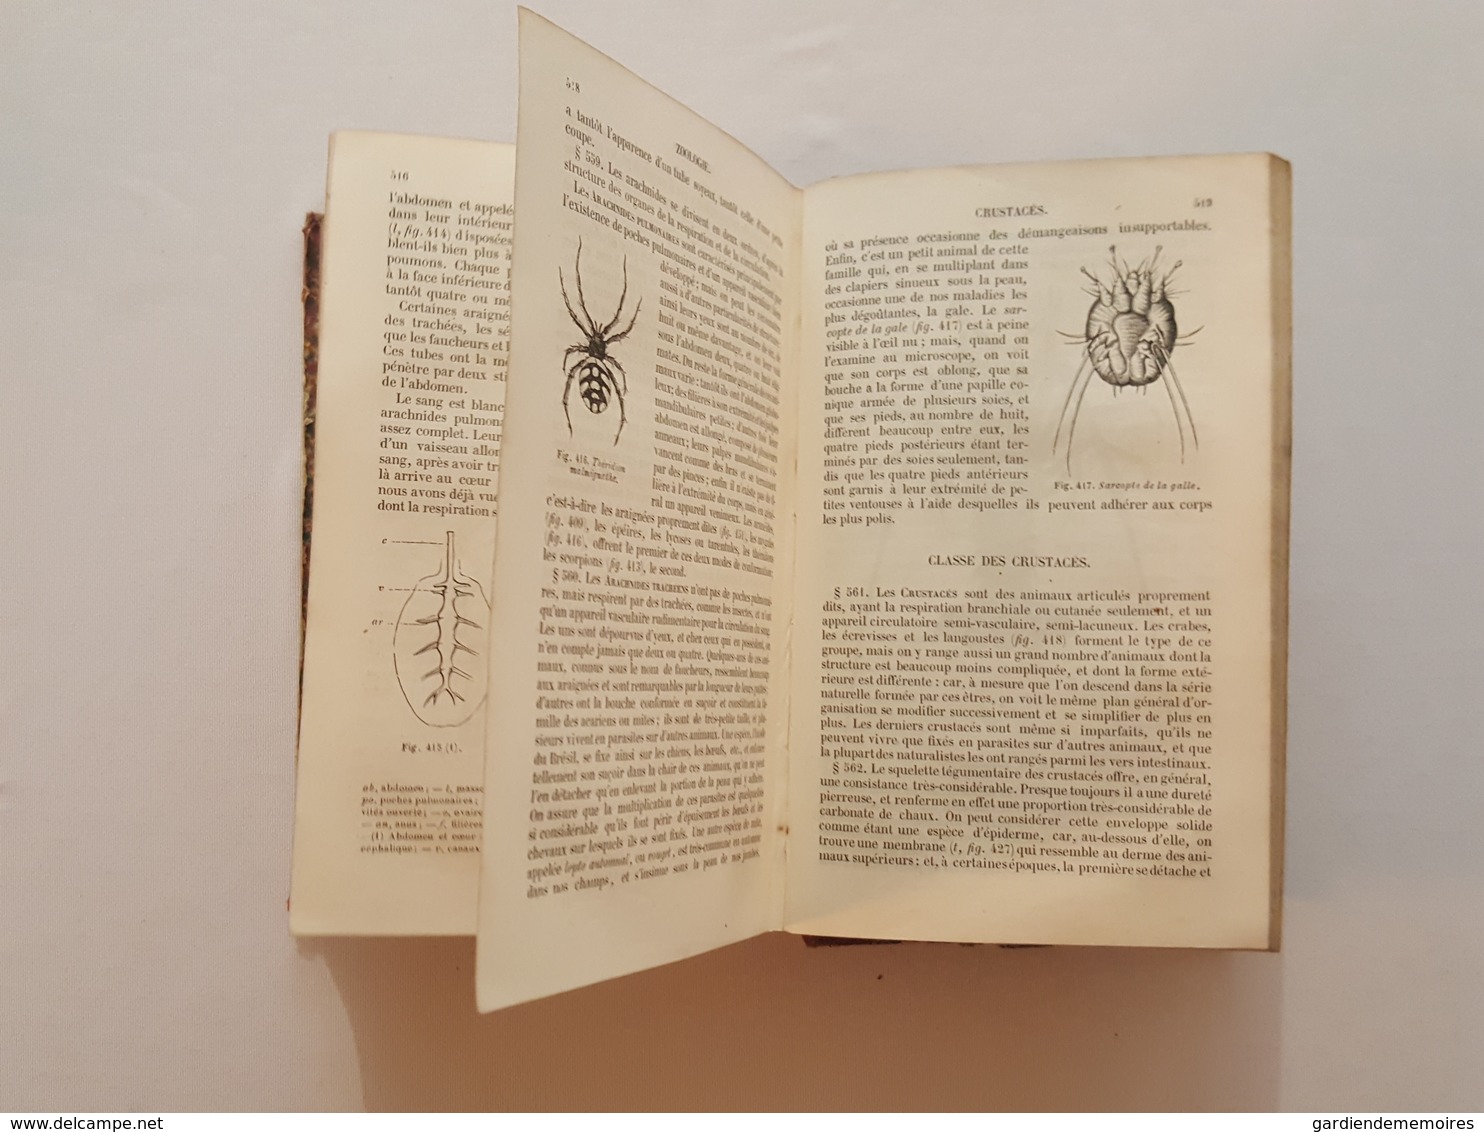 1855 Cours élémentaire d'histoire naturelle, Zoologie par Milne Edwards, 473 figures